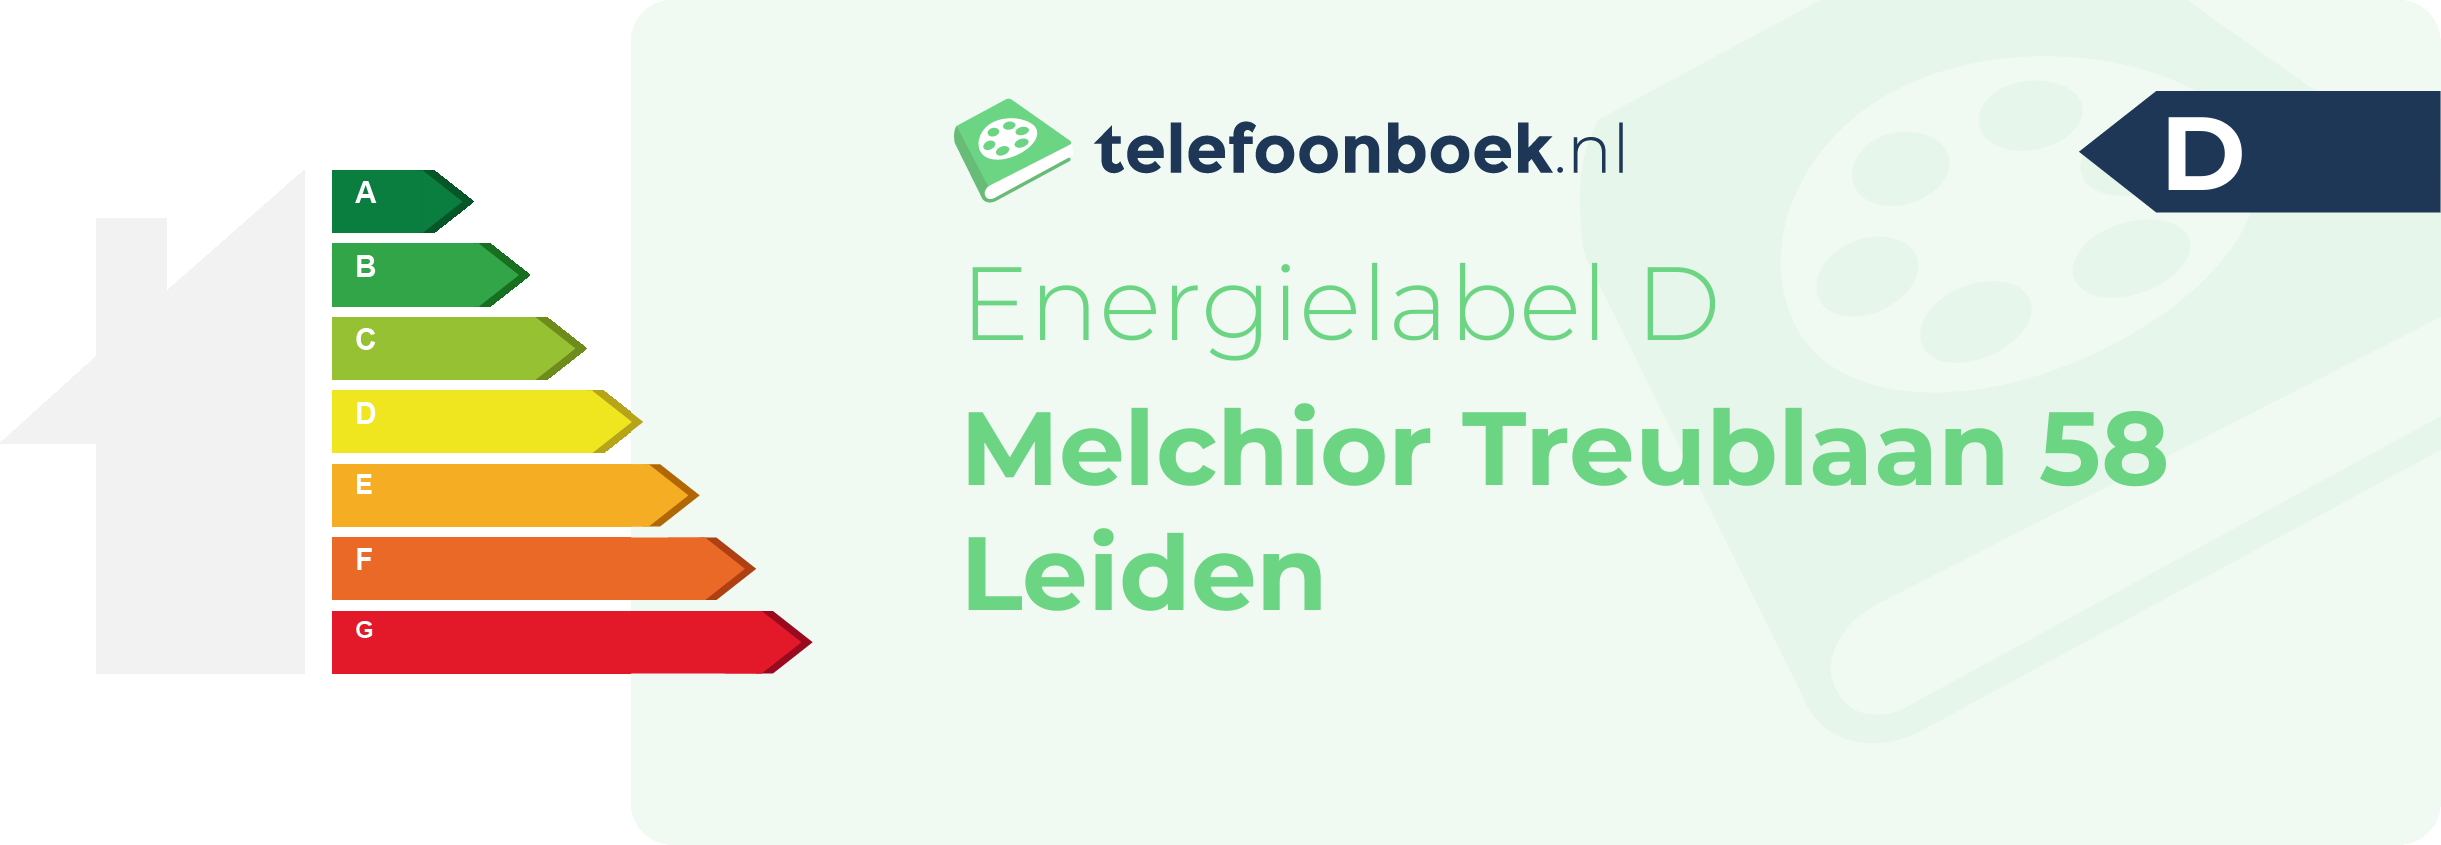 Energielabel Melchior Treublaan 58 Leiden